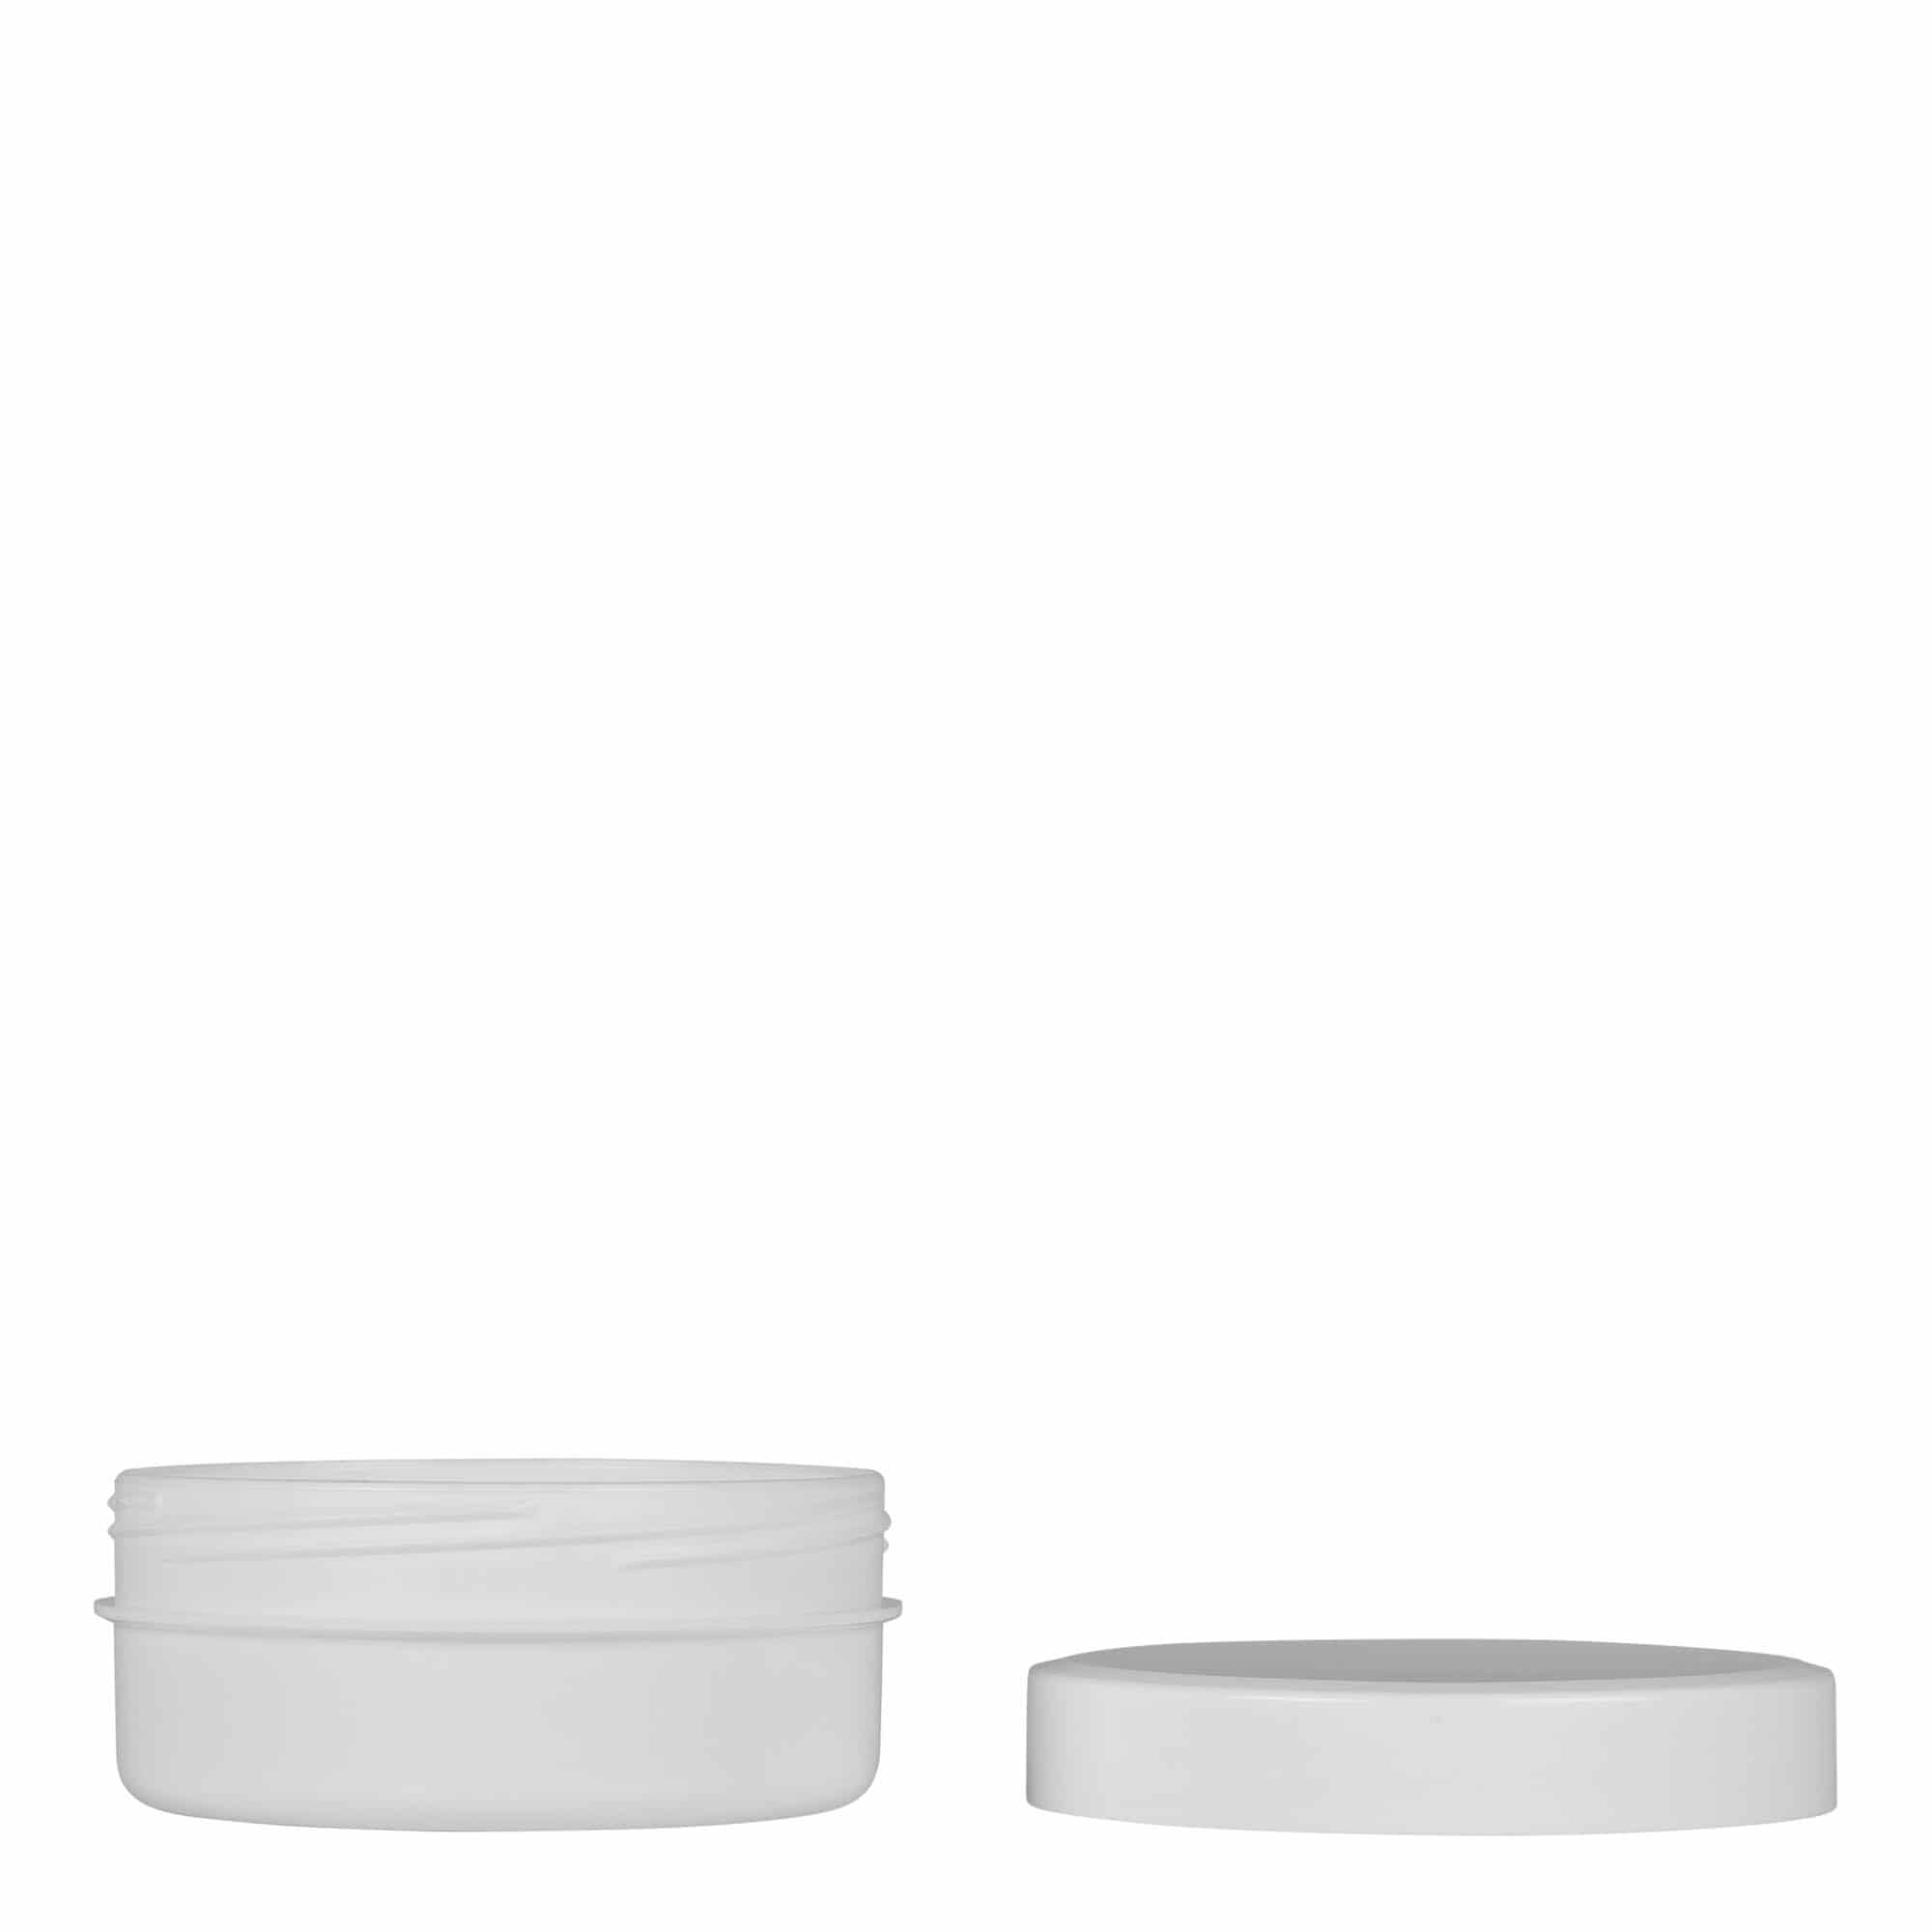 125 ml plastic jar 'White Line', PP, white, closure: screw cap